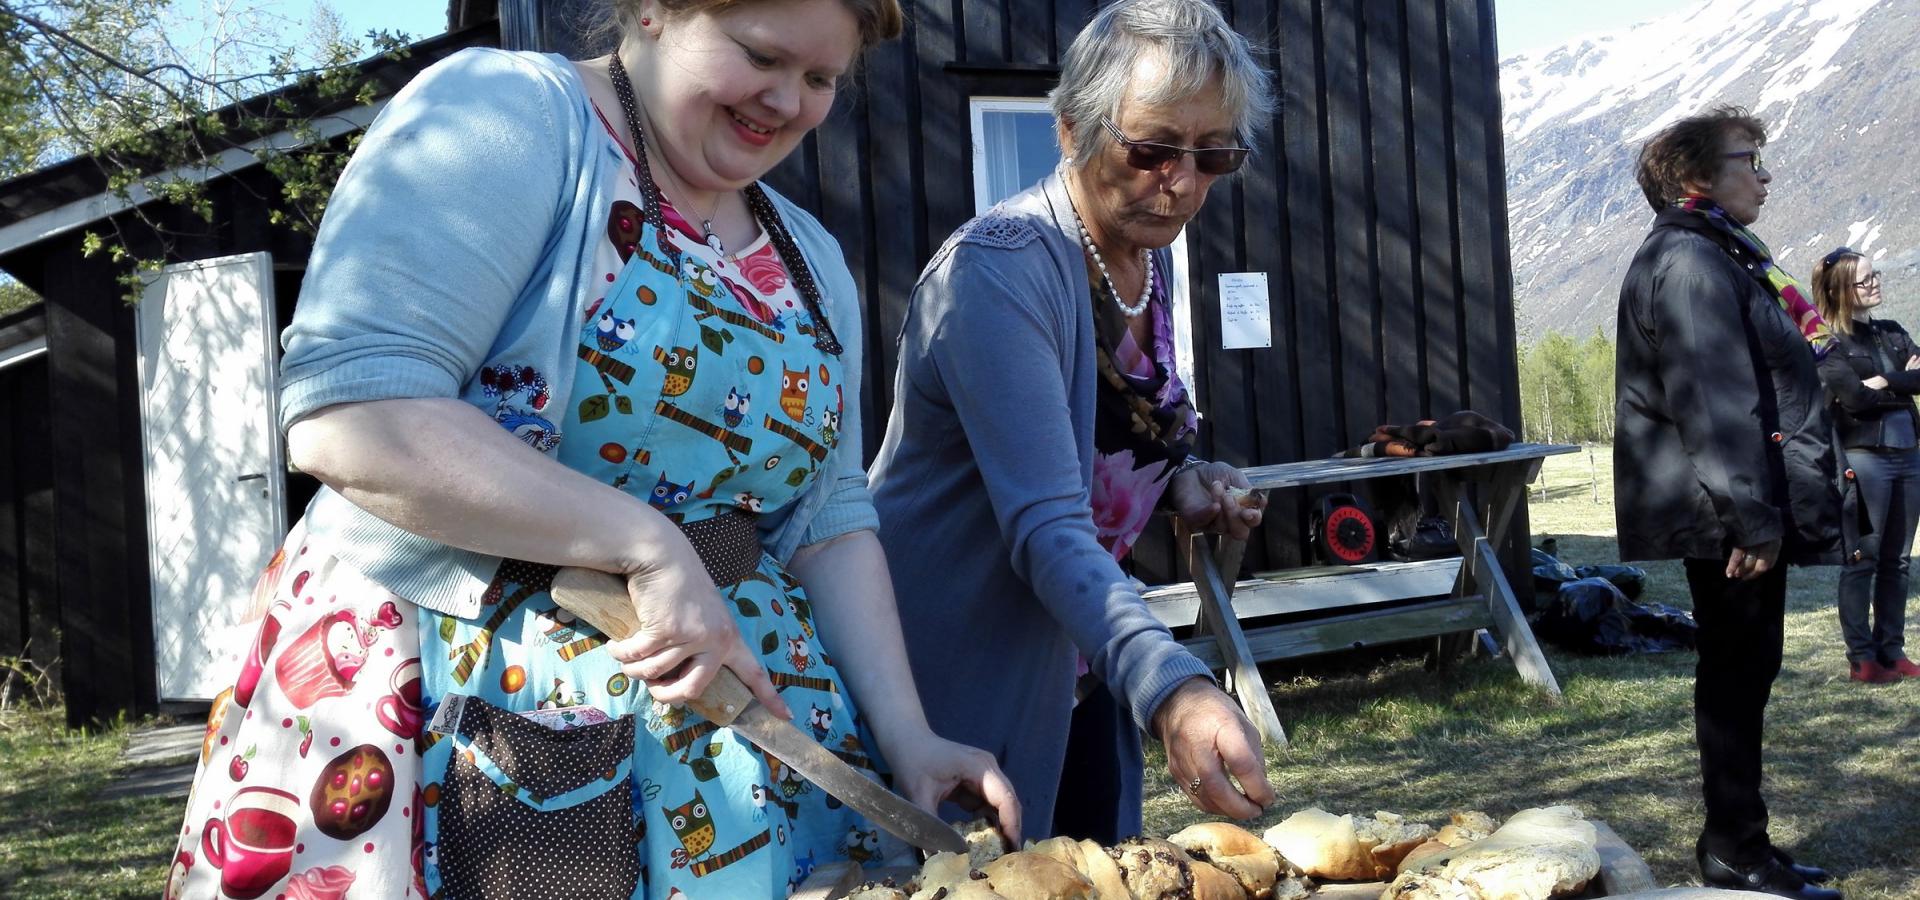 Two women baking bread outdoors